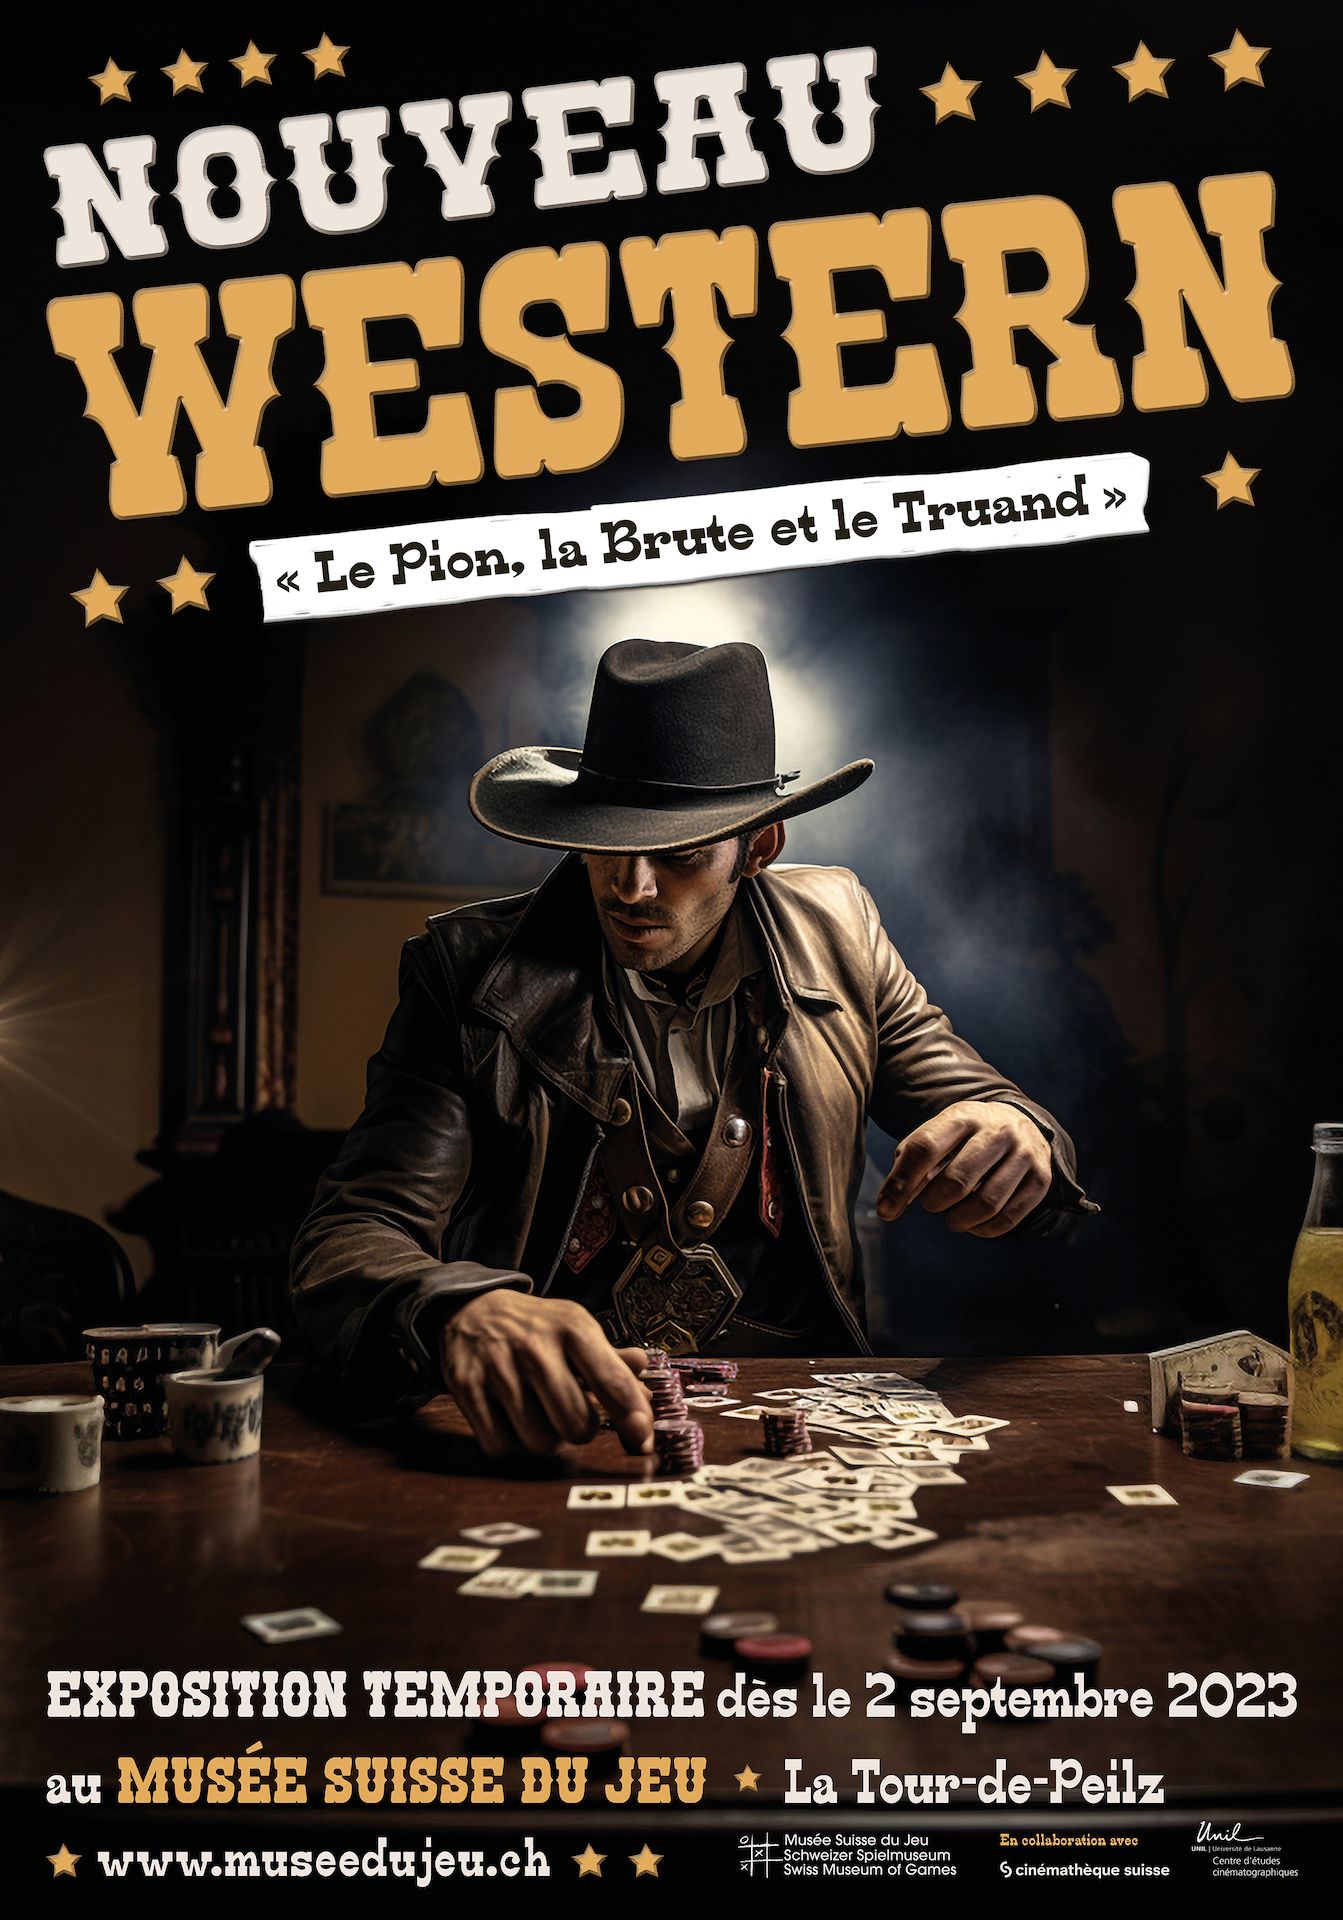 Nouveau Western “Le Pion, la Brute et le Truand”